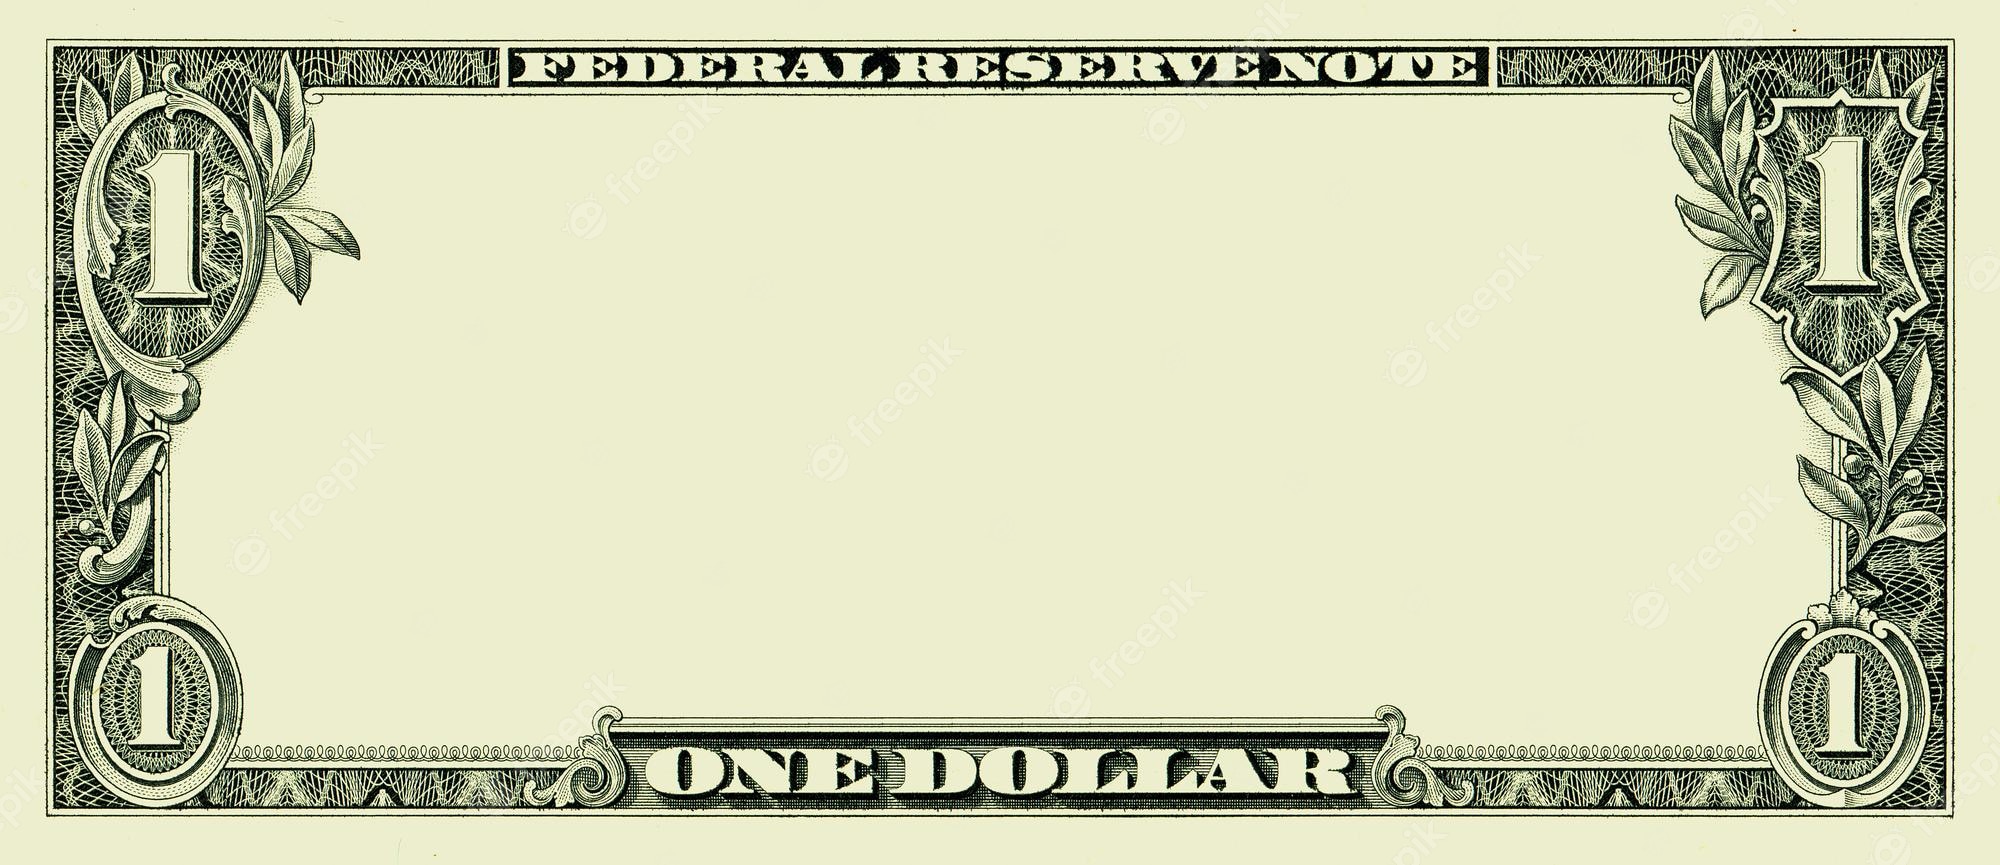 1 dollar bill clip art